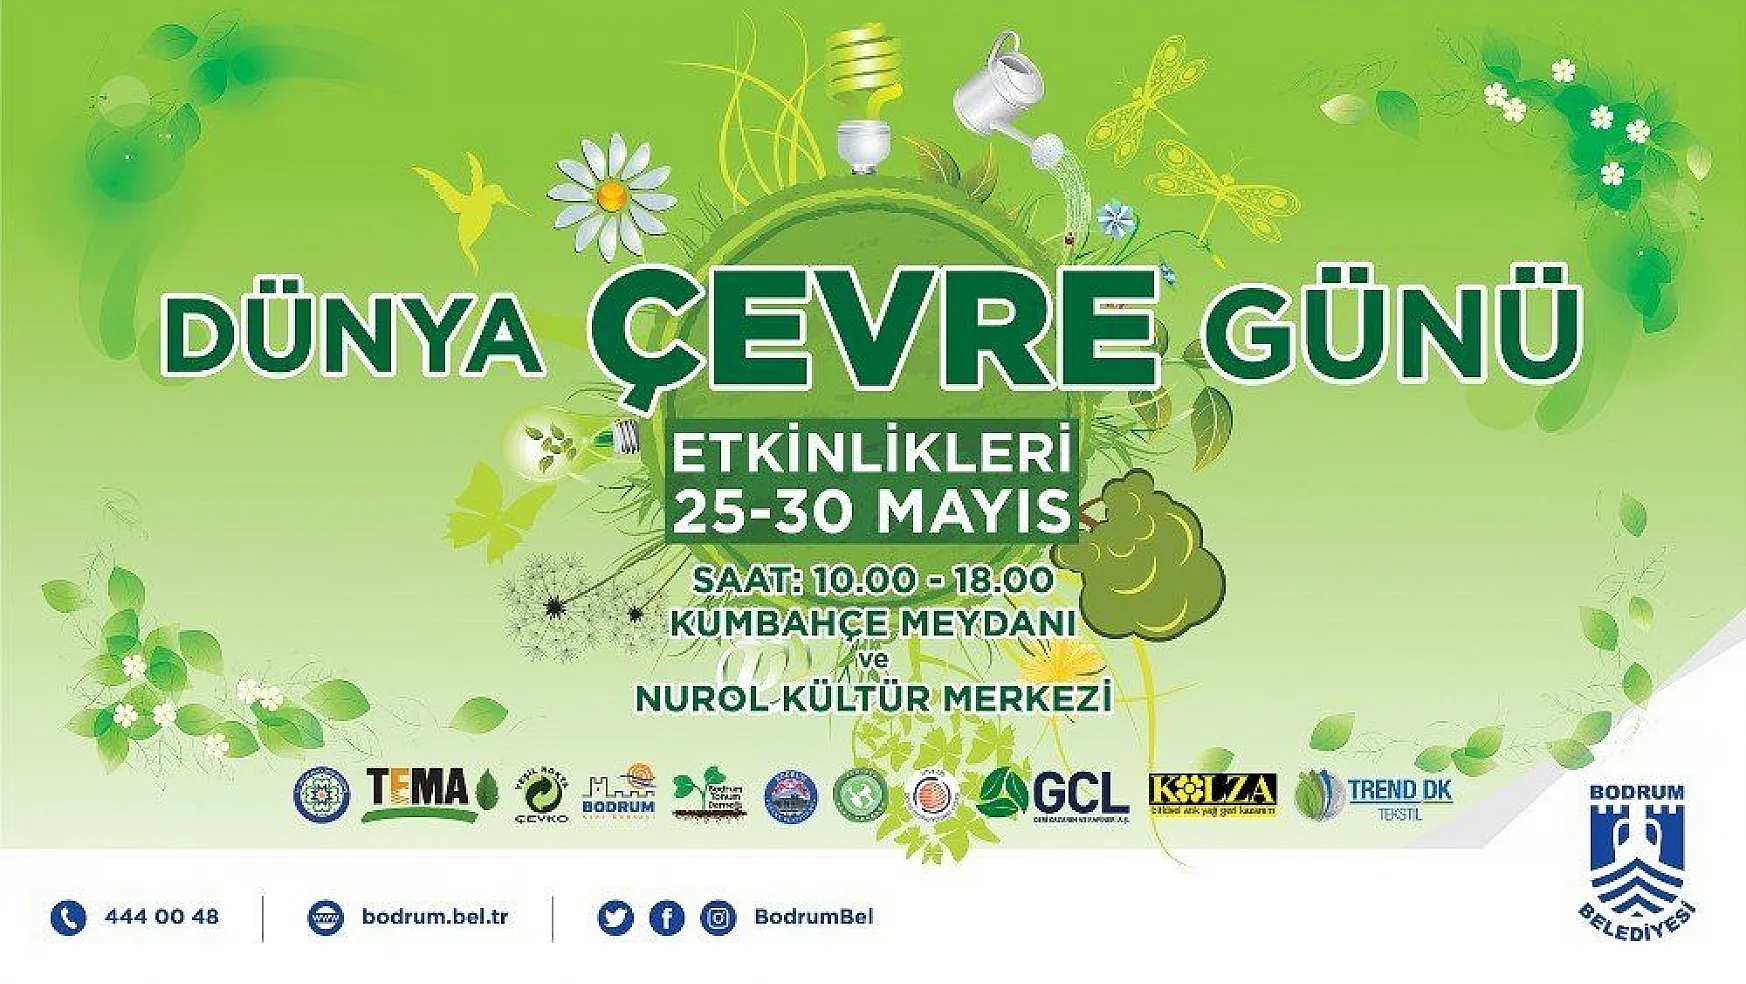 Bodrum'da Dünya Çevre Günü festival havasında kutlanacak